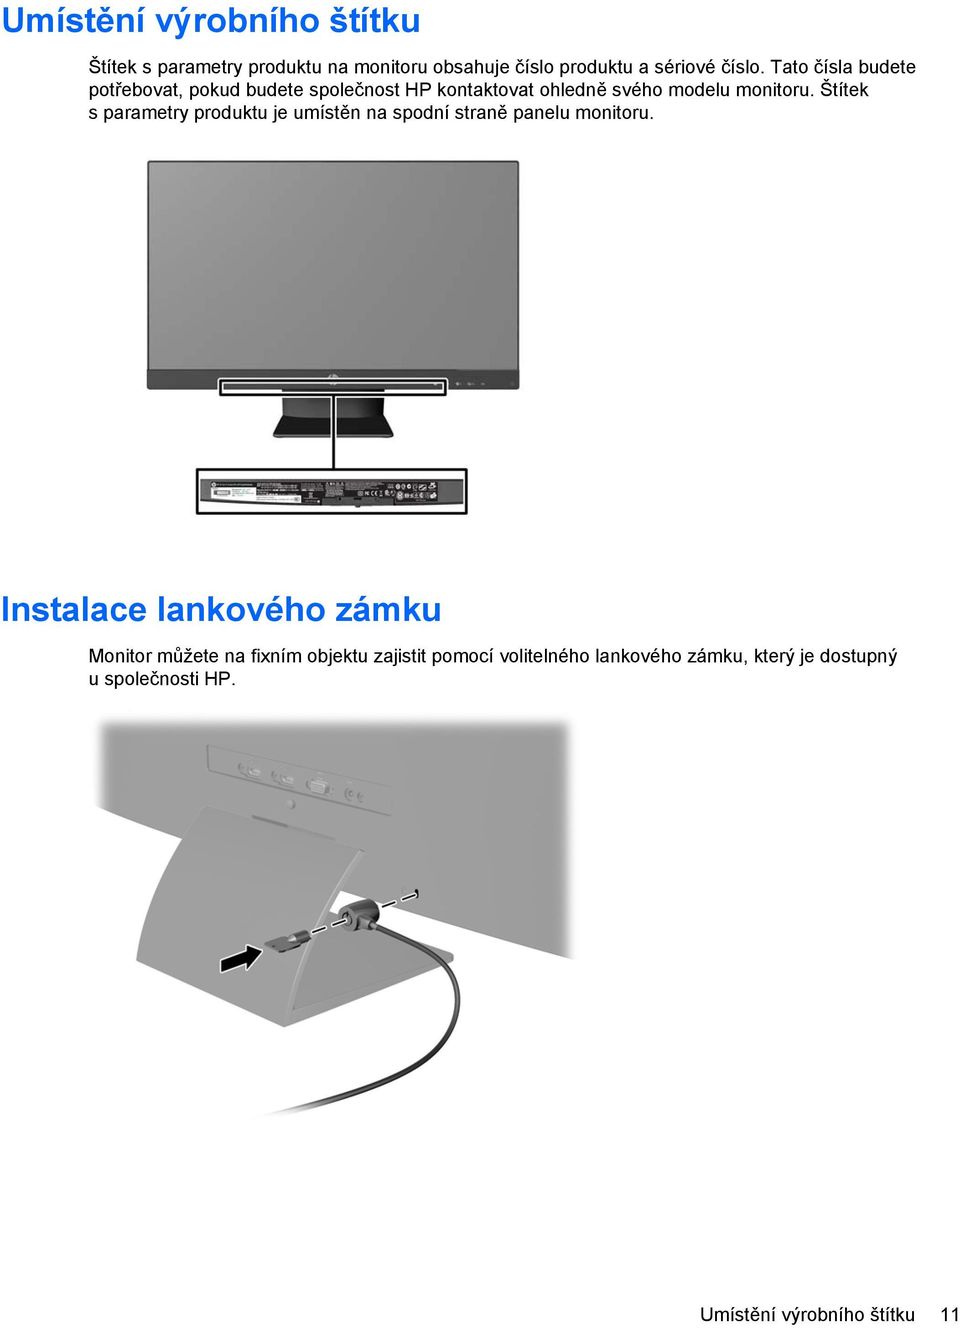 Štítek s parametry produktu je umístěn na spodní straně panelu monitoru.